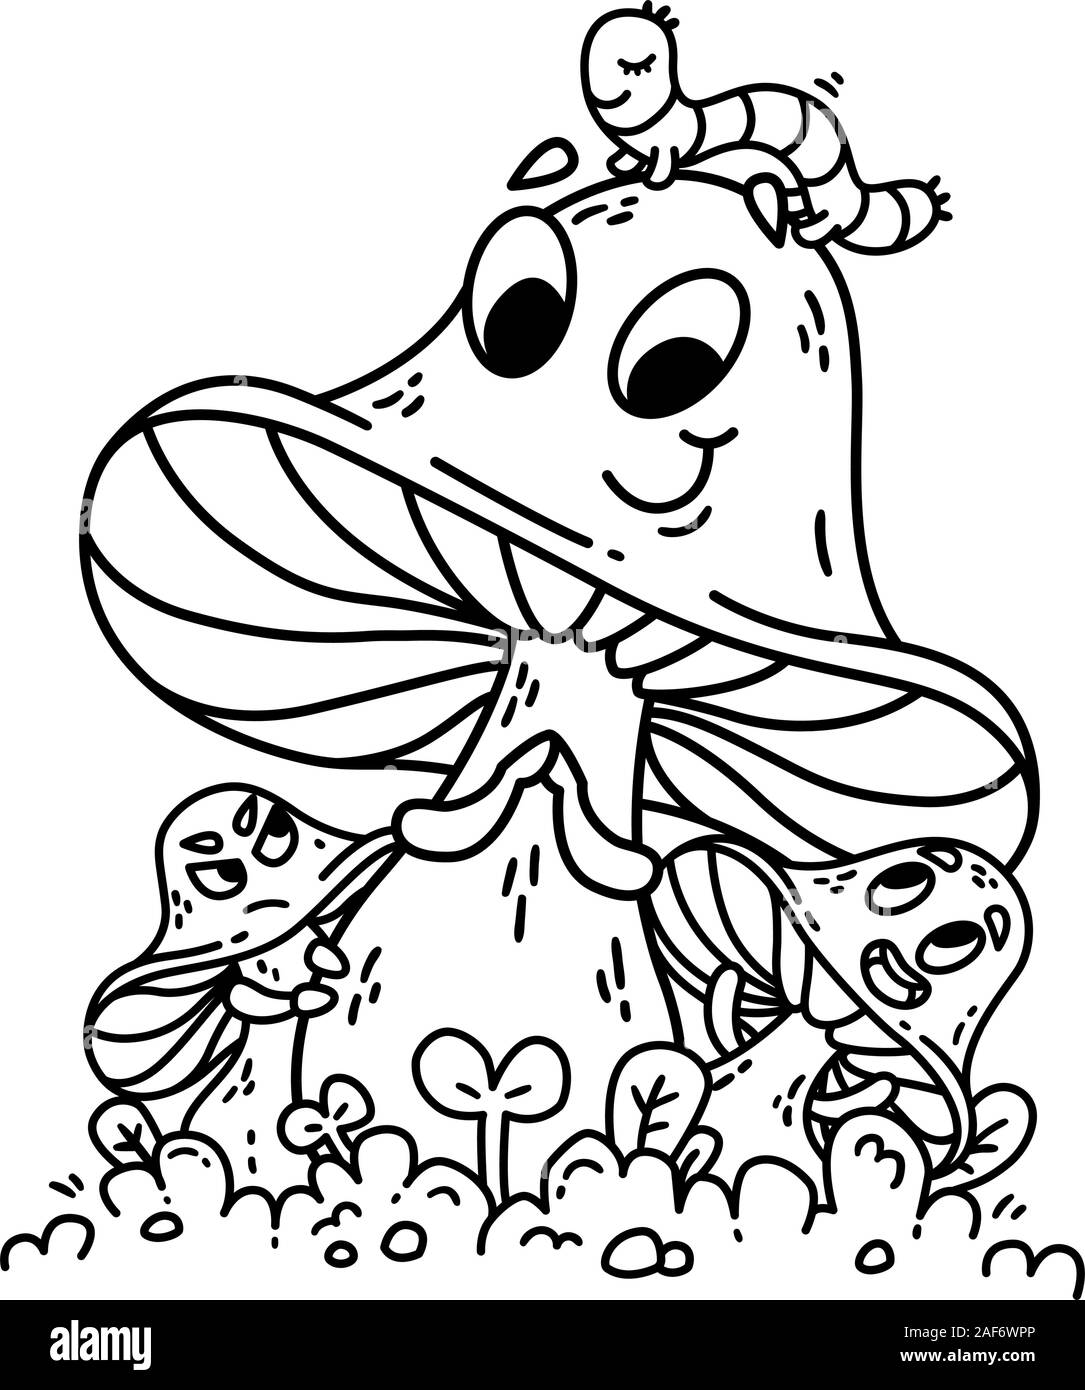 Cute cartoon Pilze auf grünem Gras mit Caterpillar auf Hut. Gemüse Vector Illustration. Bescheidenheit, Neid, Bewunderung. Auf weissem Hintergrund Stock Vektor